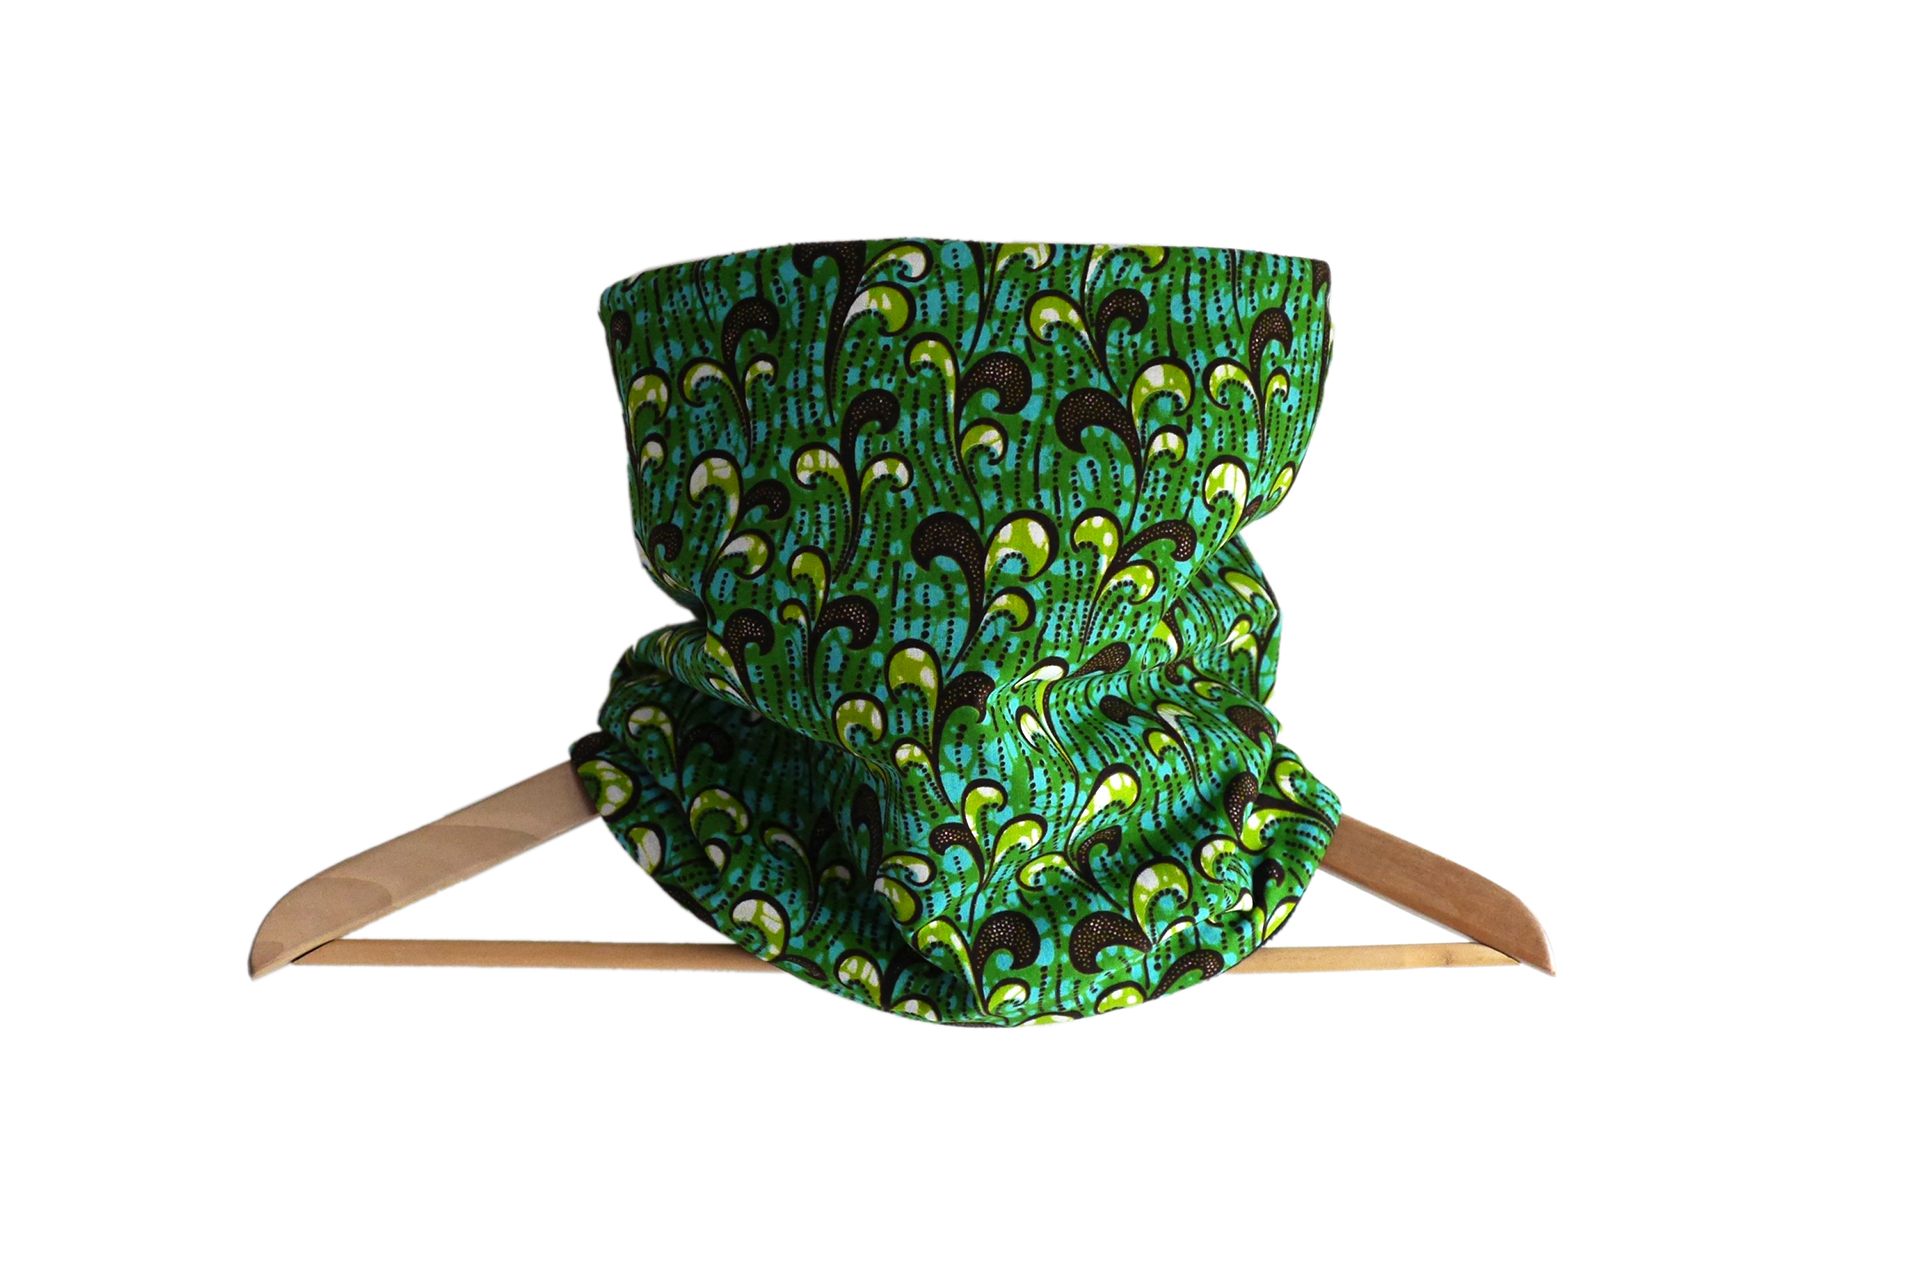 Snood wax coton motifs africain vagues vert bleu tissu réversible polaire noire fait main écharpe col tour de cou hiver unique original handmade cadeau - Julie & COo